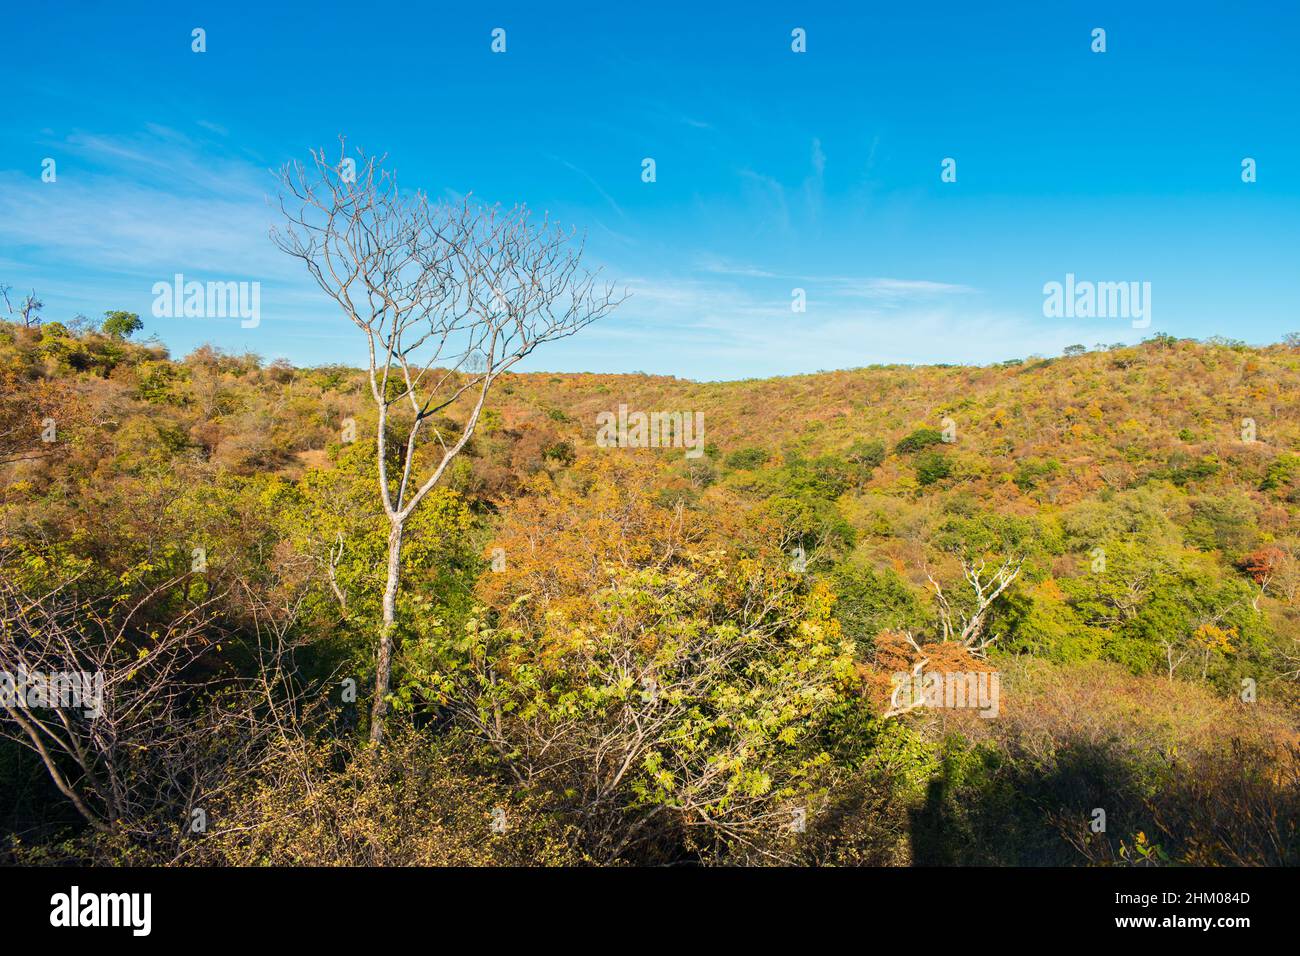 Ein Blick auf die Caatinga-Landschaft zu Beginn der Trockenzeit, Herbstfarben - Oeiras, Bundesstaat Piaui, Brasilien Stockfoto